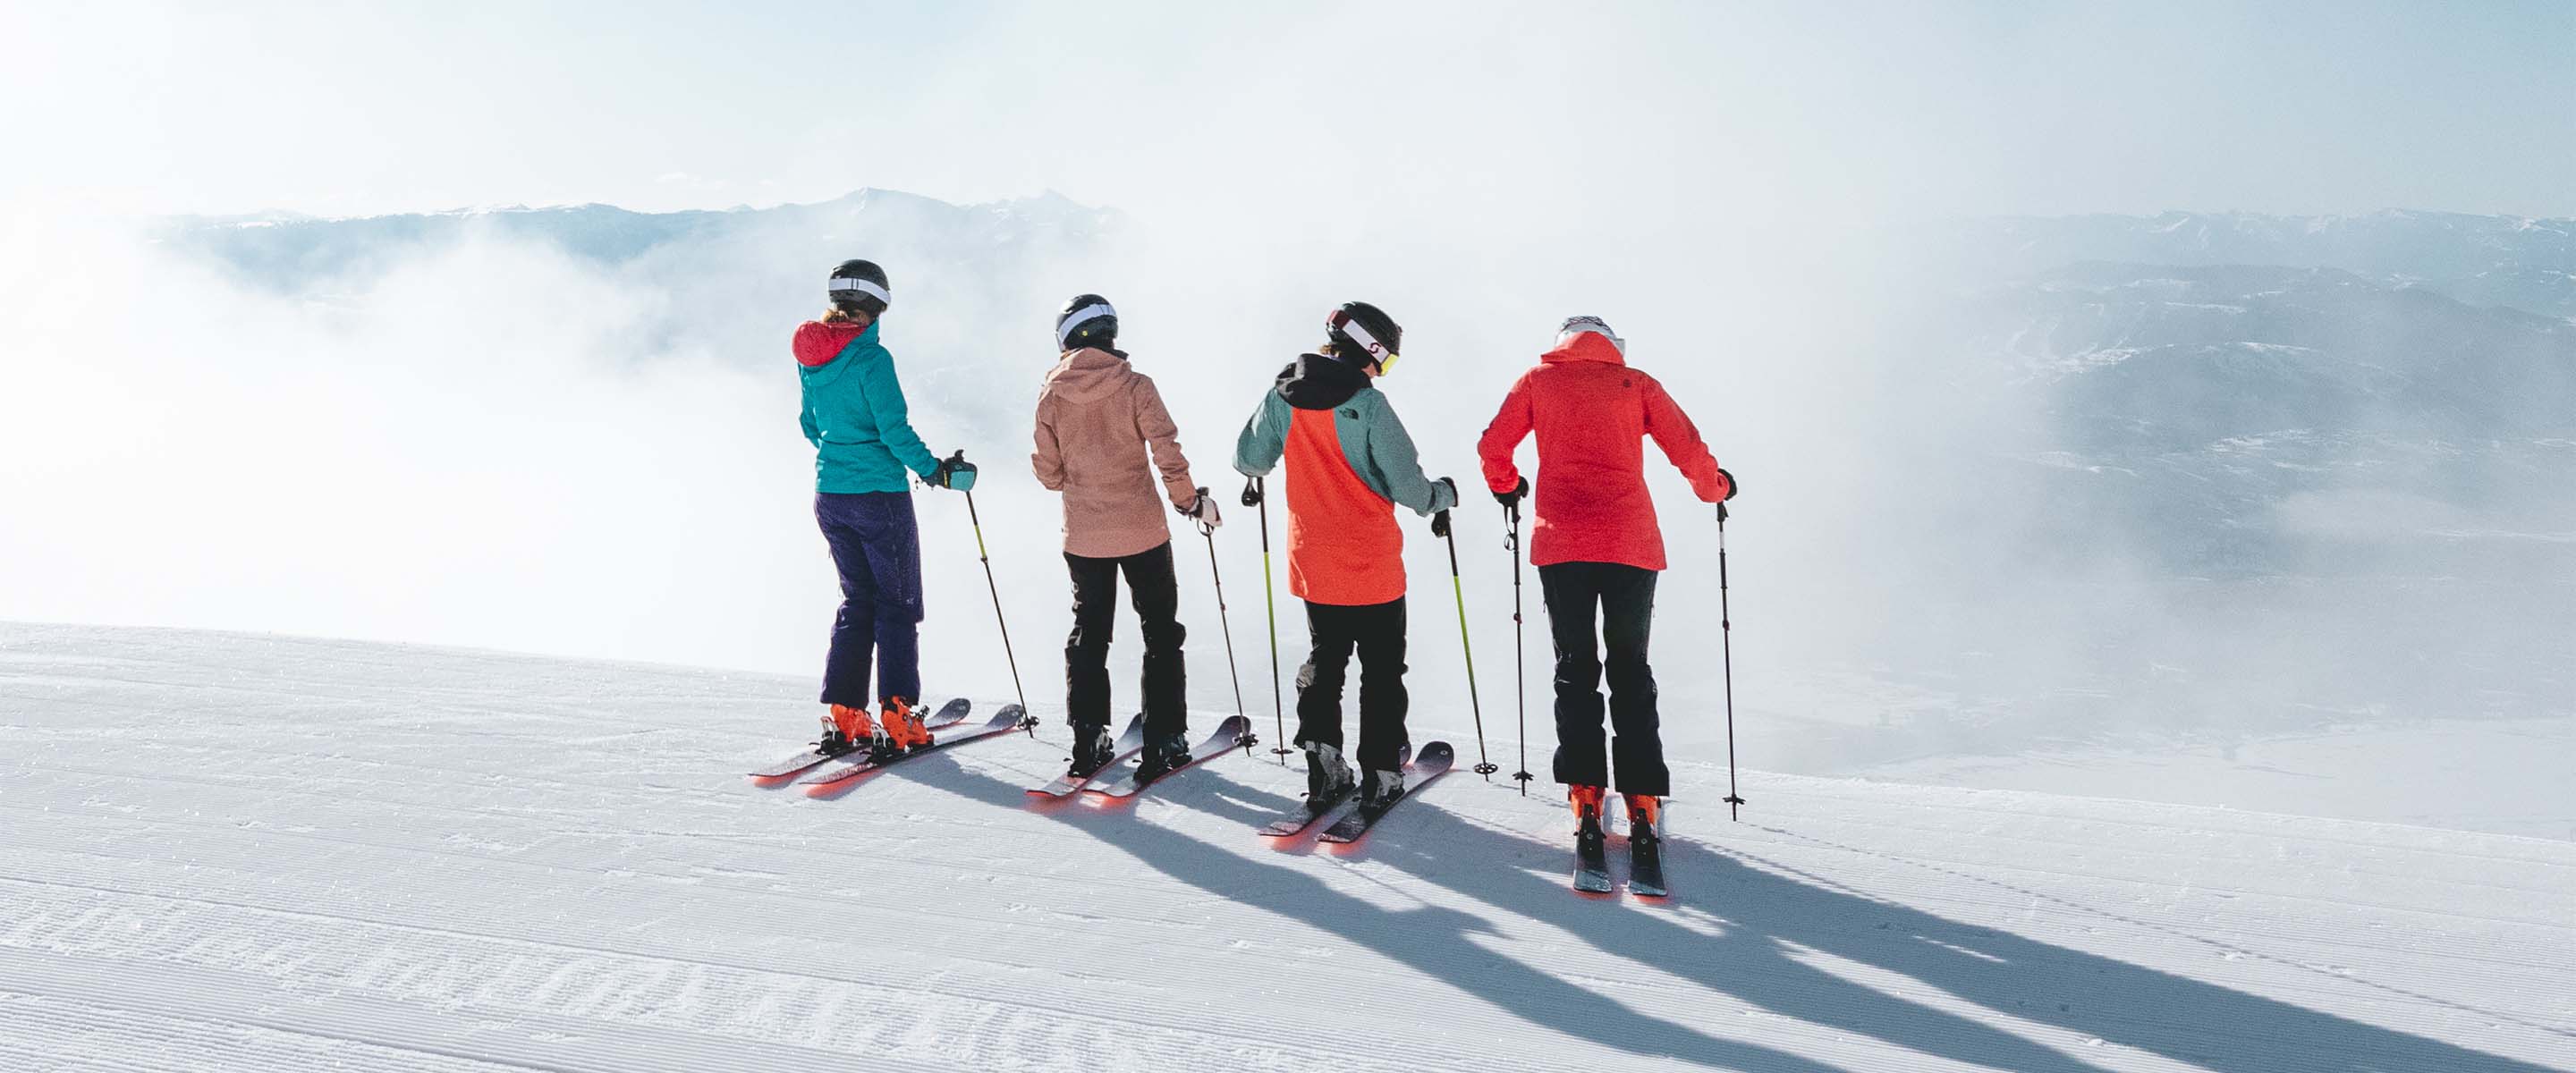 Conseils ski alpin : les chaussures de ski pour femmes - snowflike